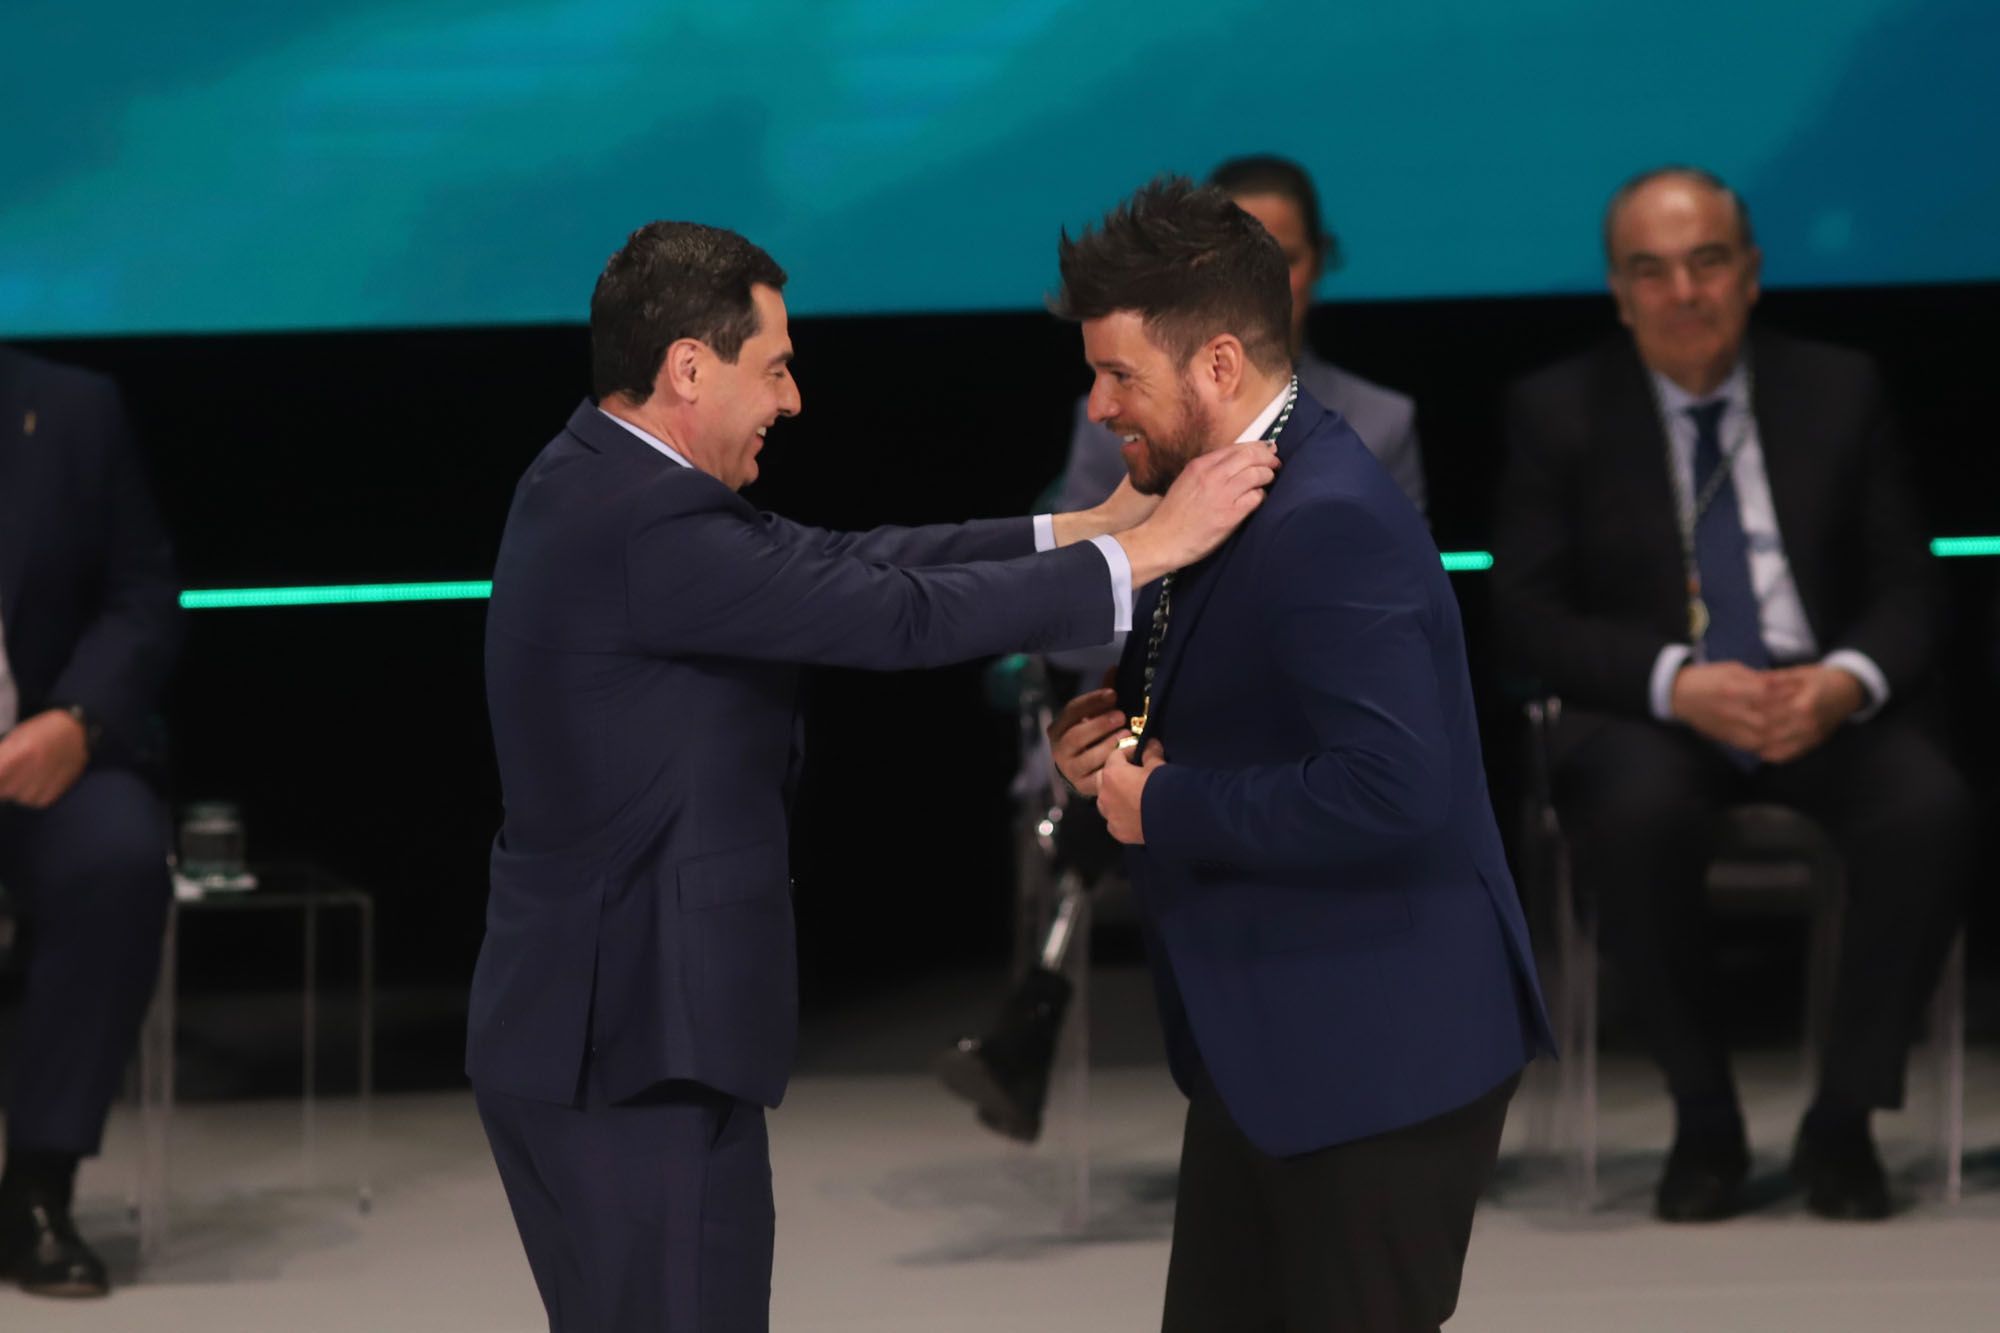 La gala del 28-F y la entrega de Medallas de Andalucía 2024, en imágenes